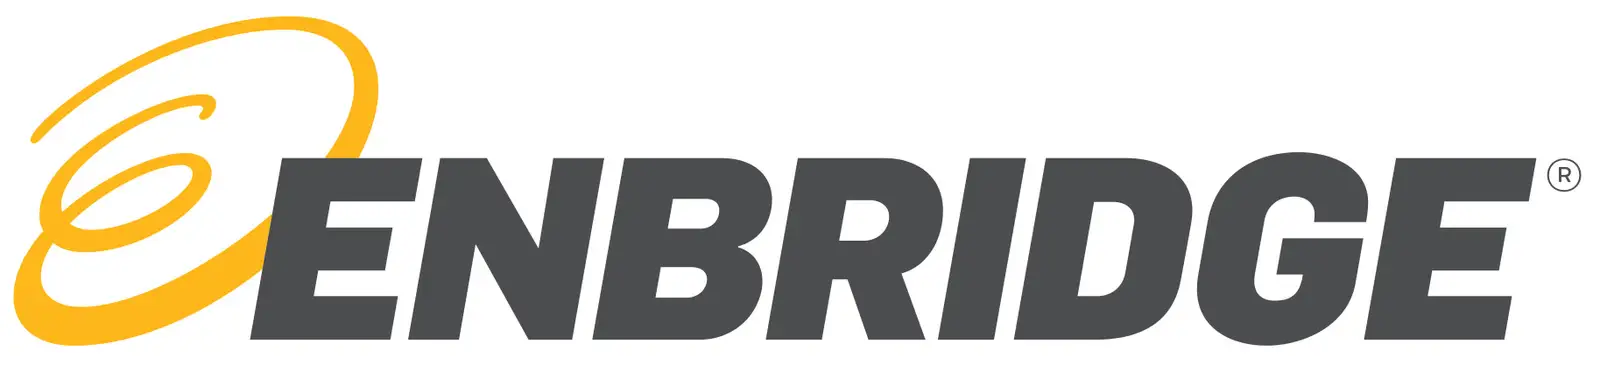 Enbridge  logo